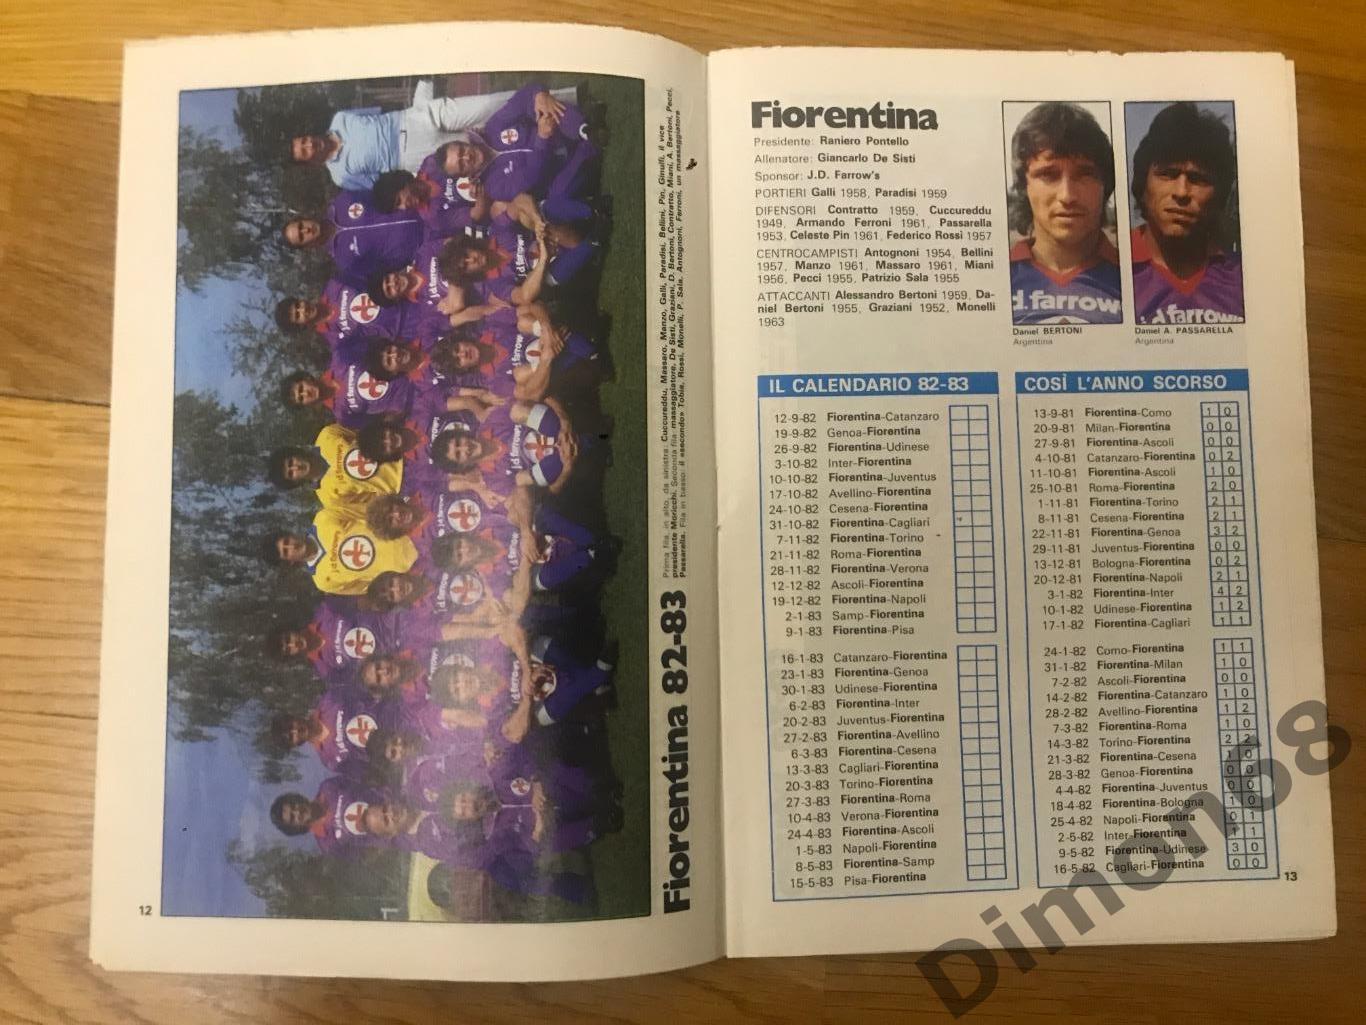 приложение из журнала гуерин спортивно чемпионат италии сезон 1982/83г 2